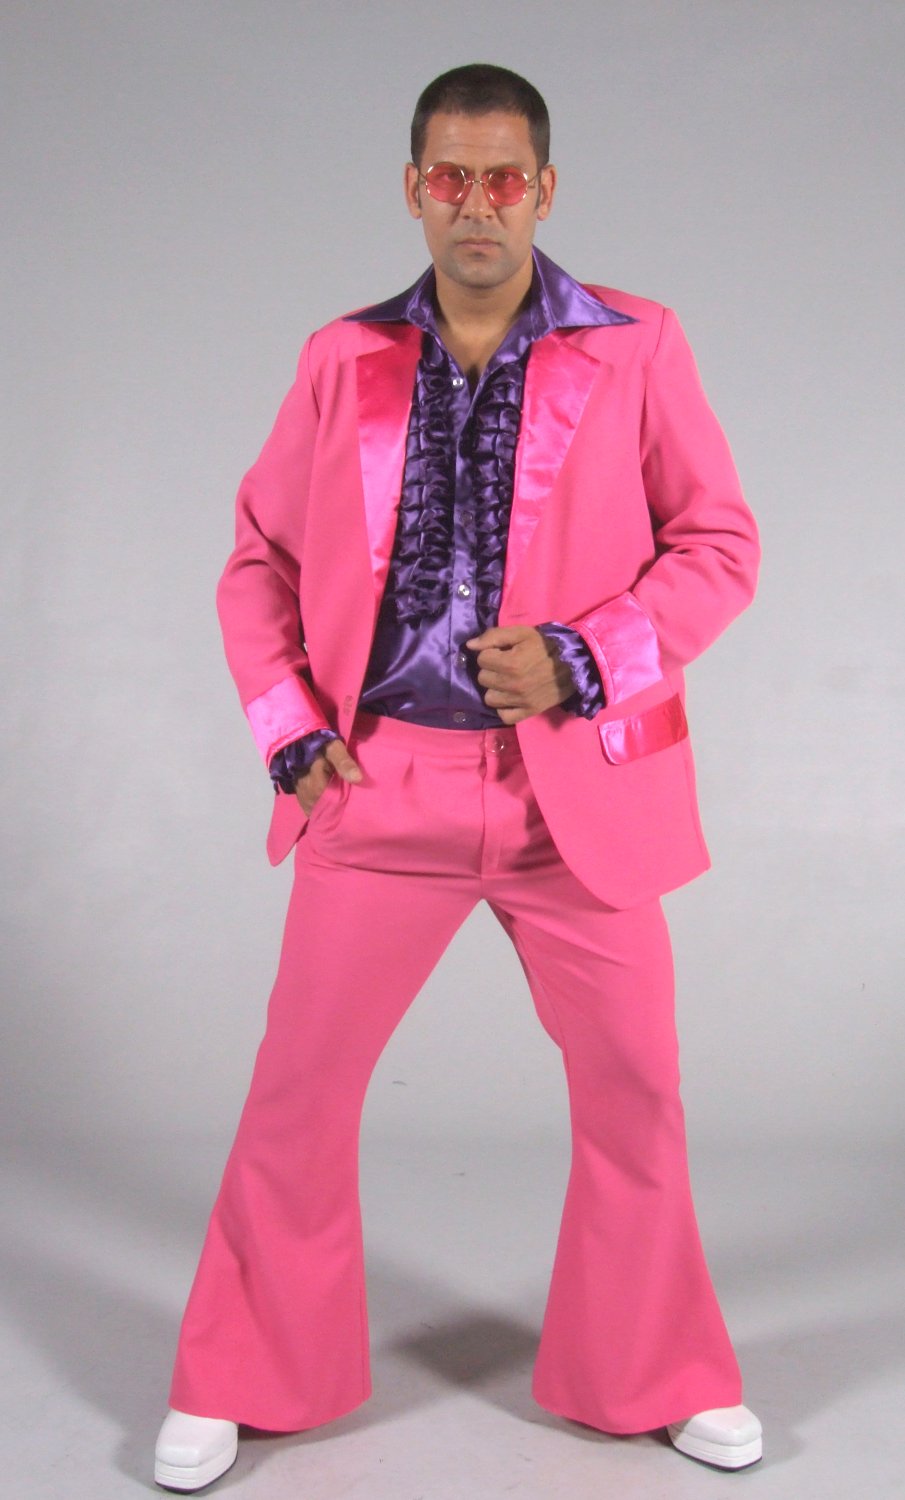 Déguisement disco homme : Tenue et costume année disco homme